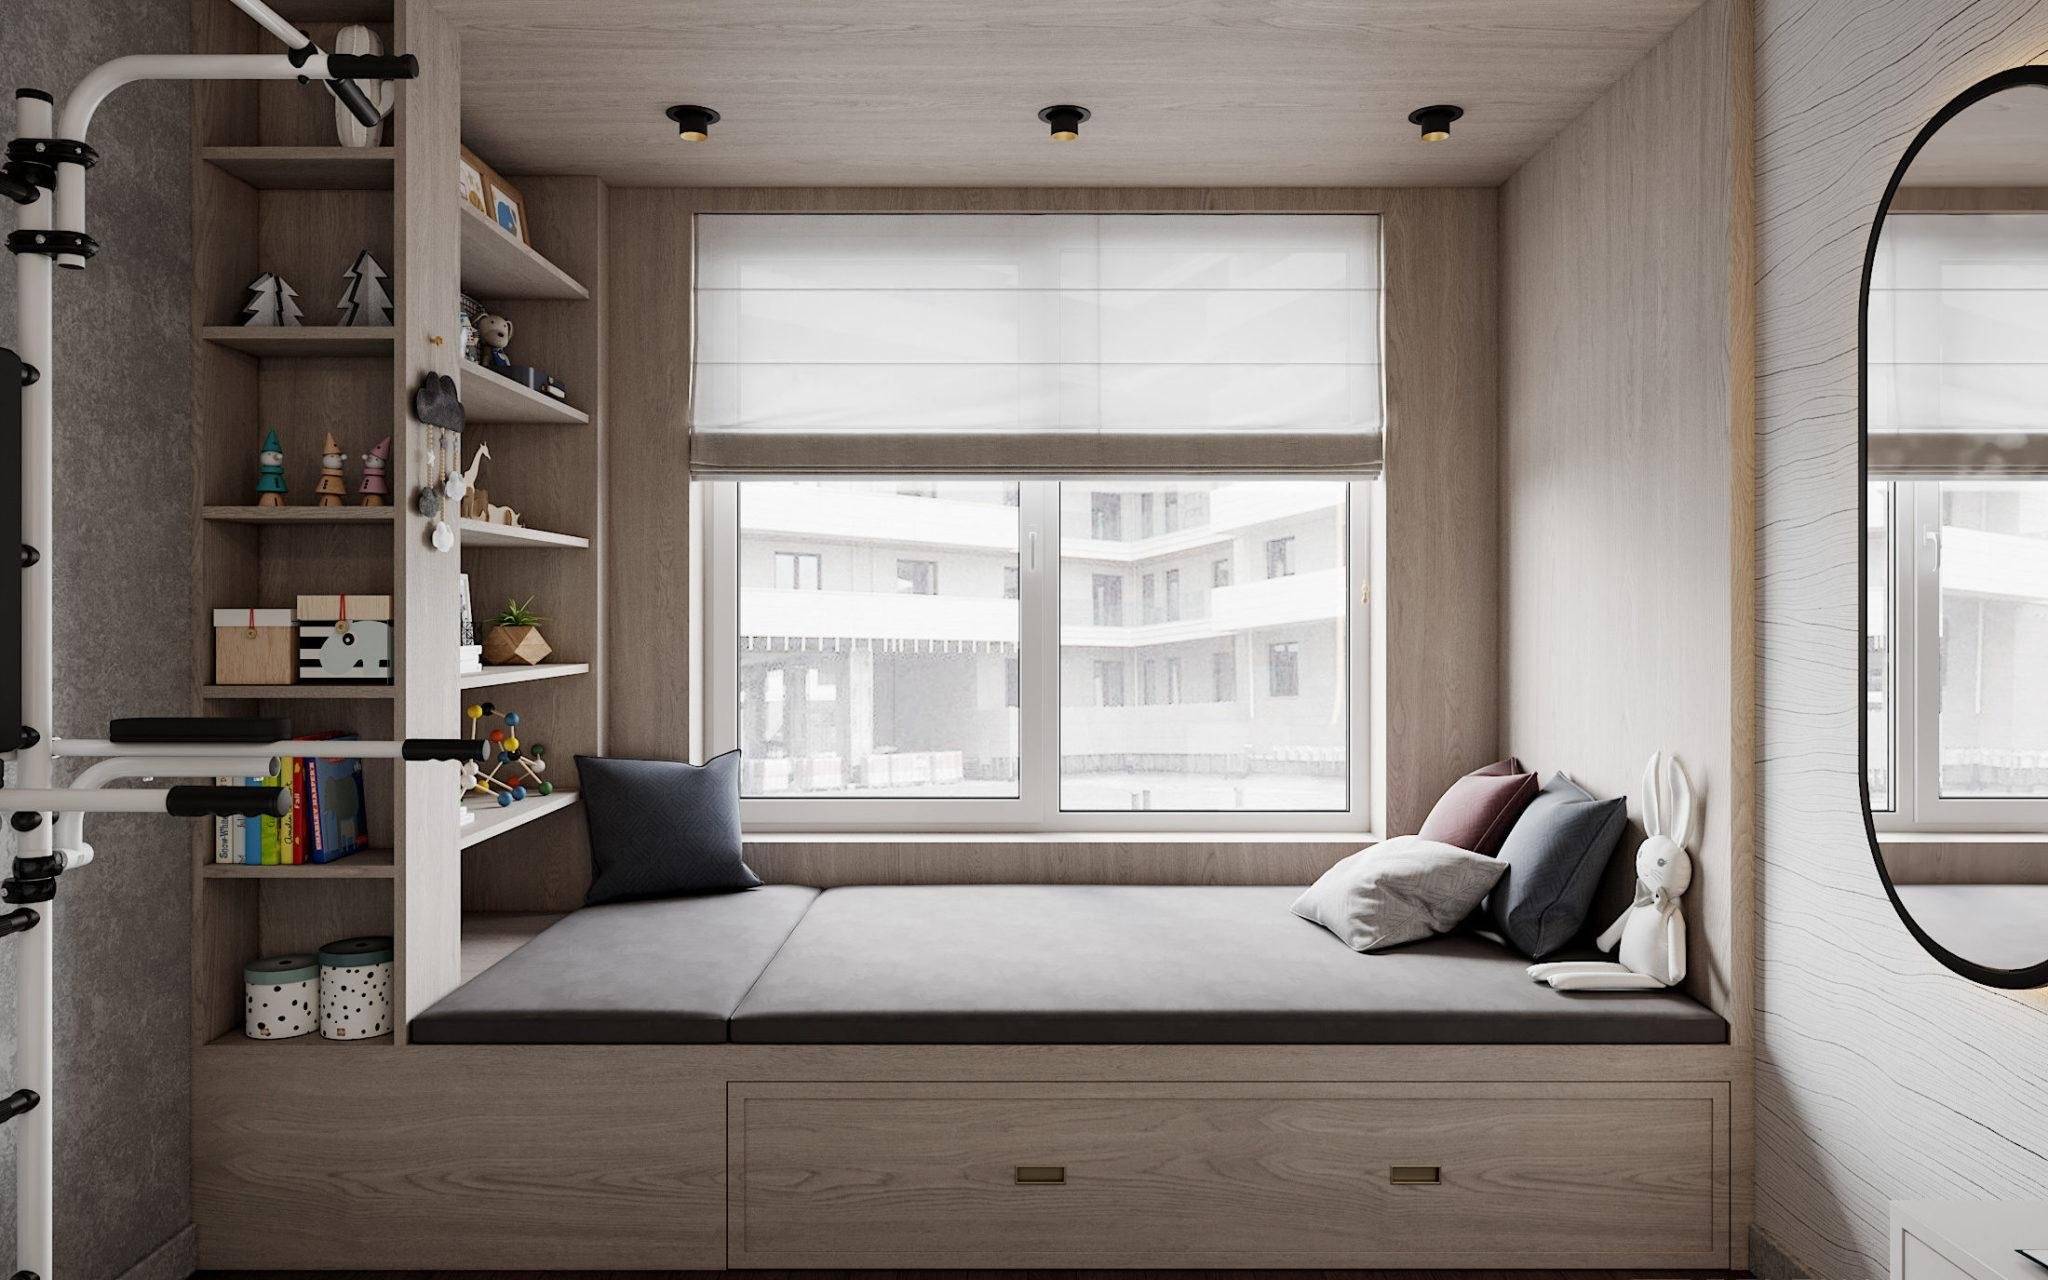 Кровать подиум у окна. Кровать-подиум в маленькой комнате. Спальня с подиумом у окна. Кровать вдоль окна. Дизайн подиум